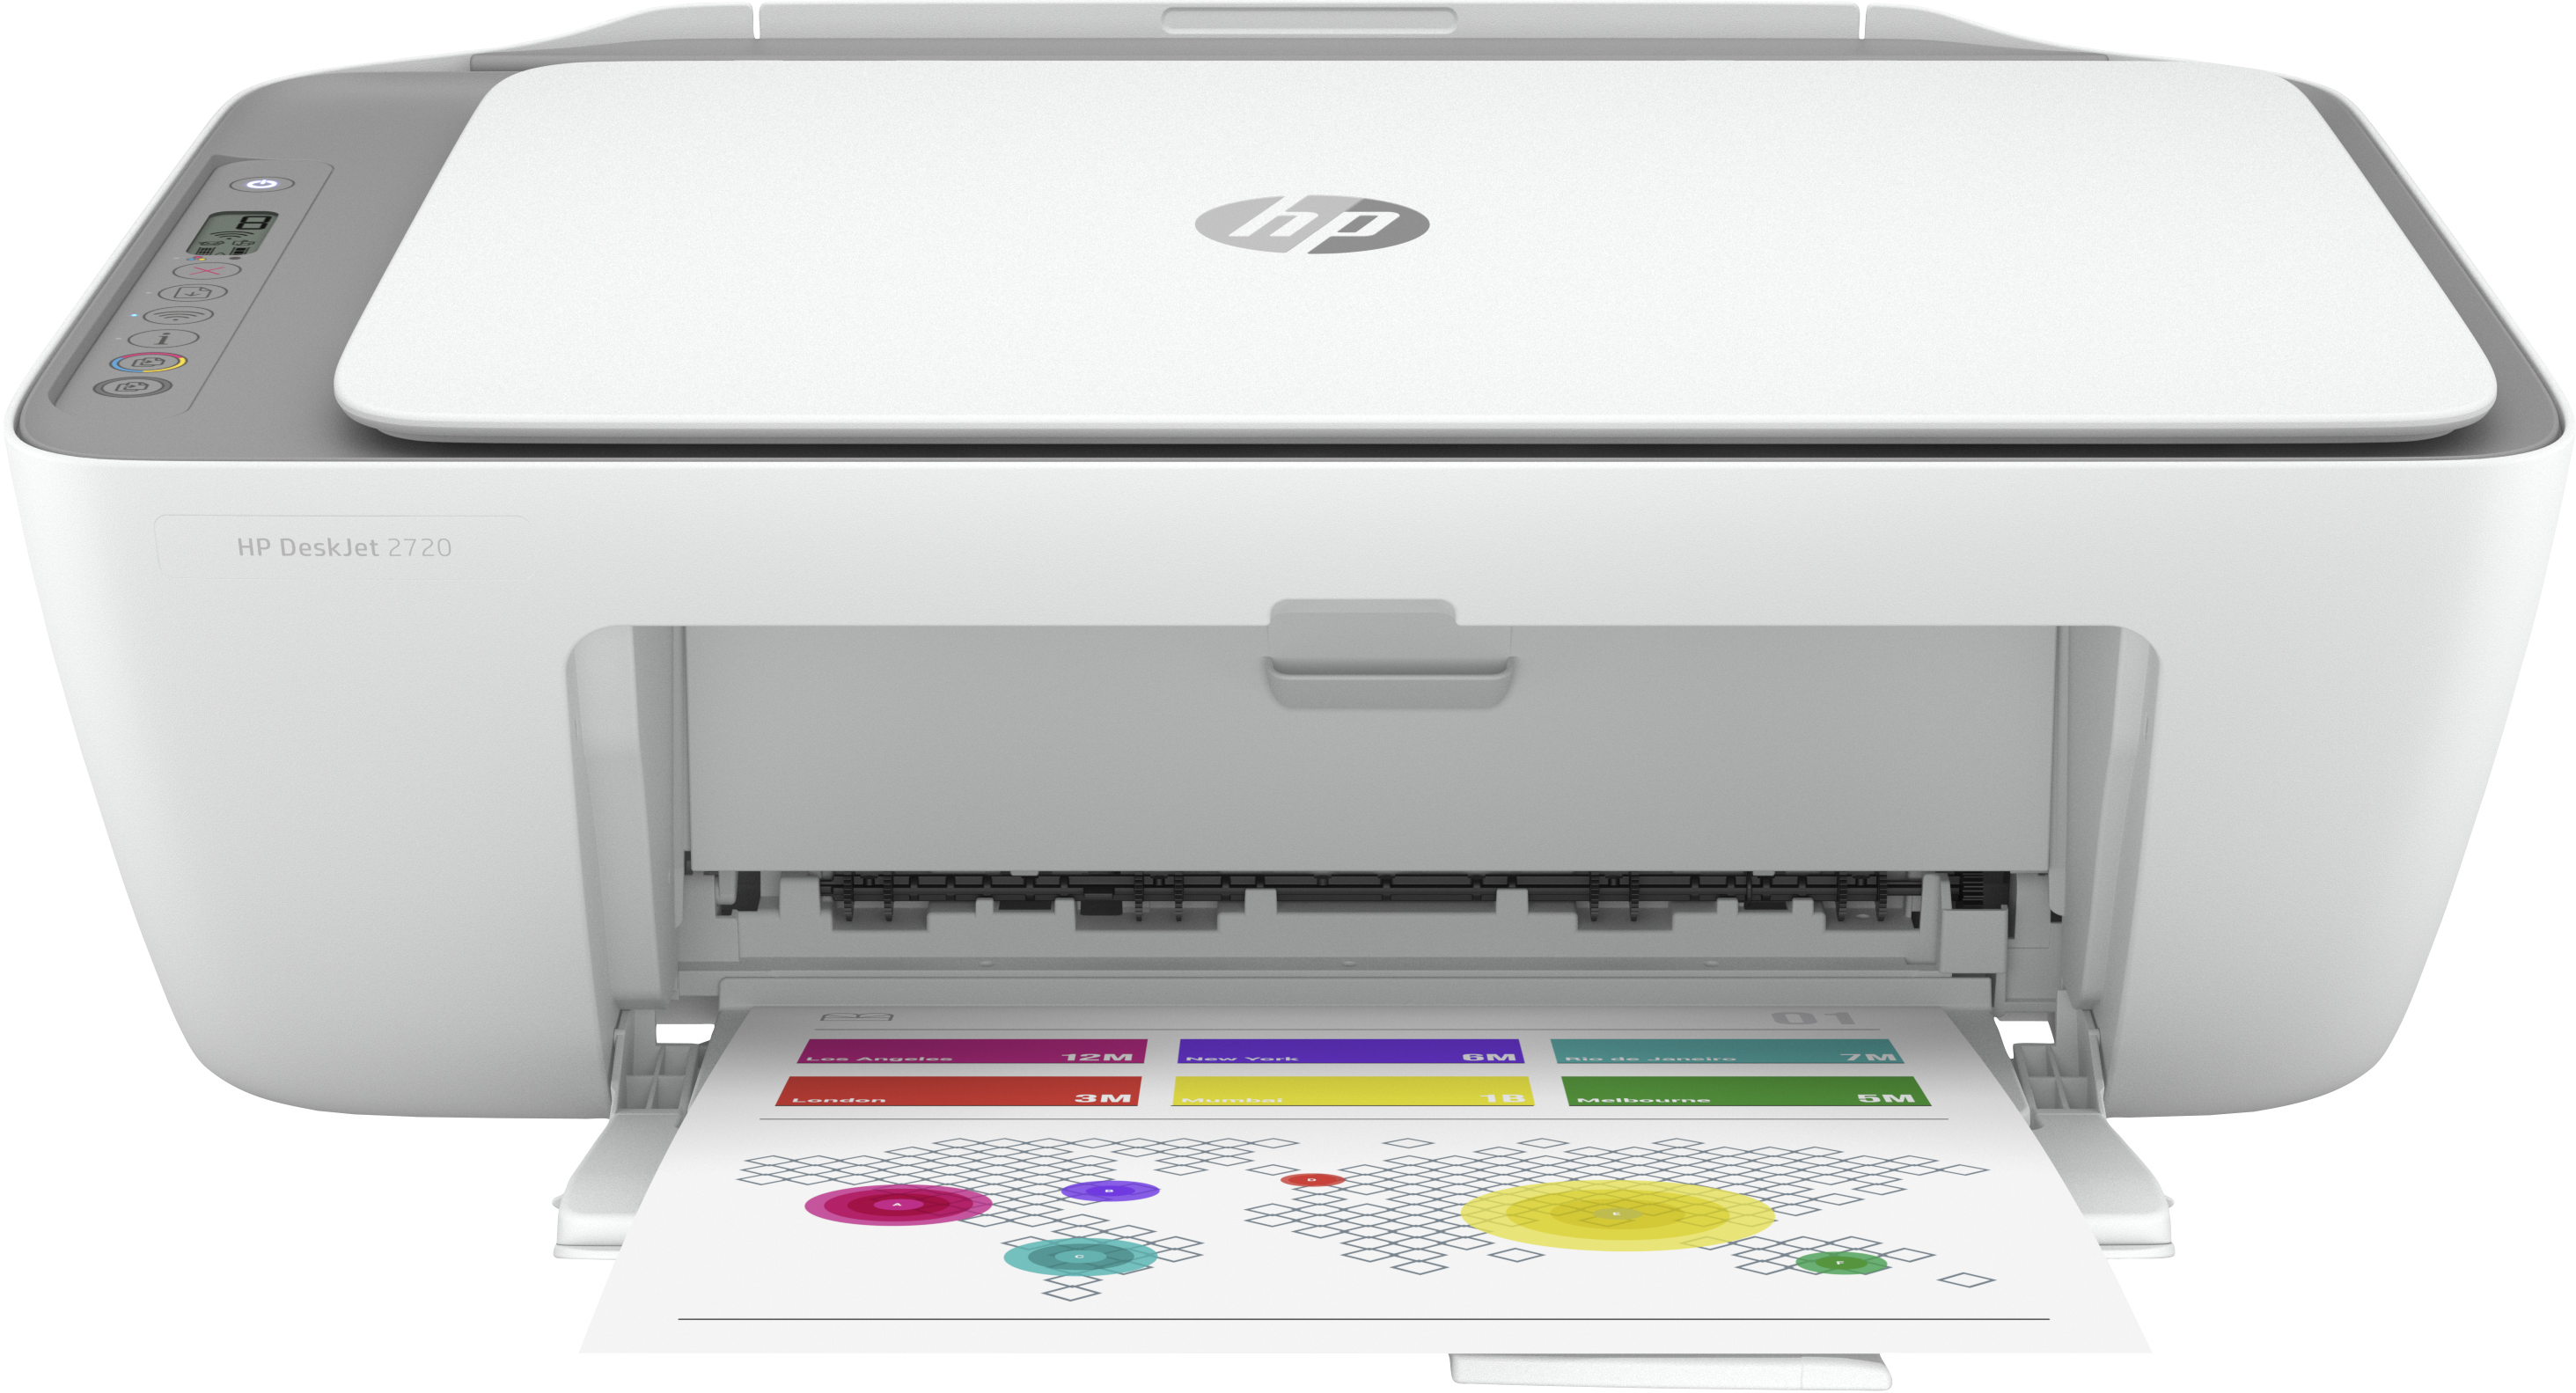 Paradox mannelijk Dapper HP DeskJet HP DeskJet 2720 All-in-One printer, Kleur, Printer voor Home,  Printen, kopiëren, scannen, Draadloos; Geschikt voor HP Instant Ink;  Printen vanaf een telefoon of tablet all-in-one printer kopen? |  Kieskeurig.nl 